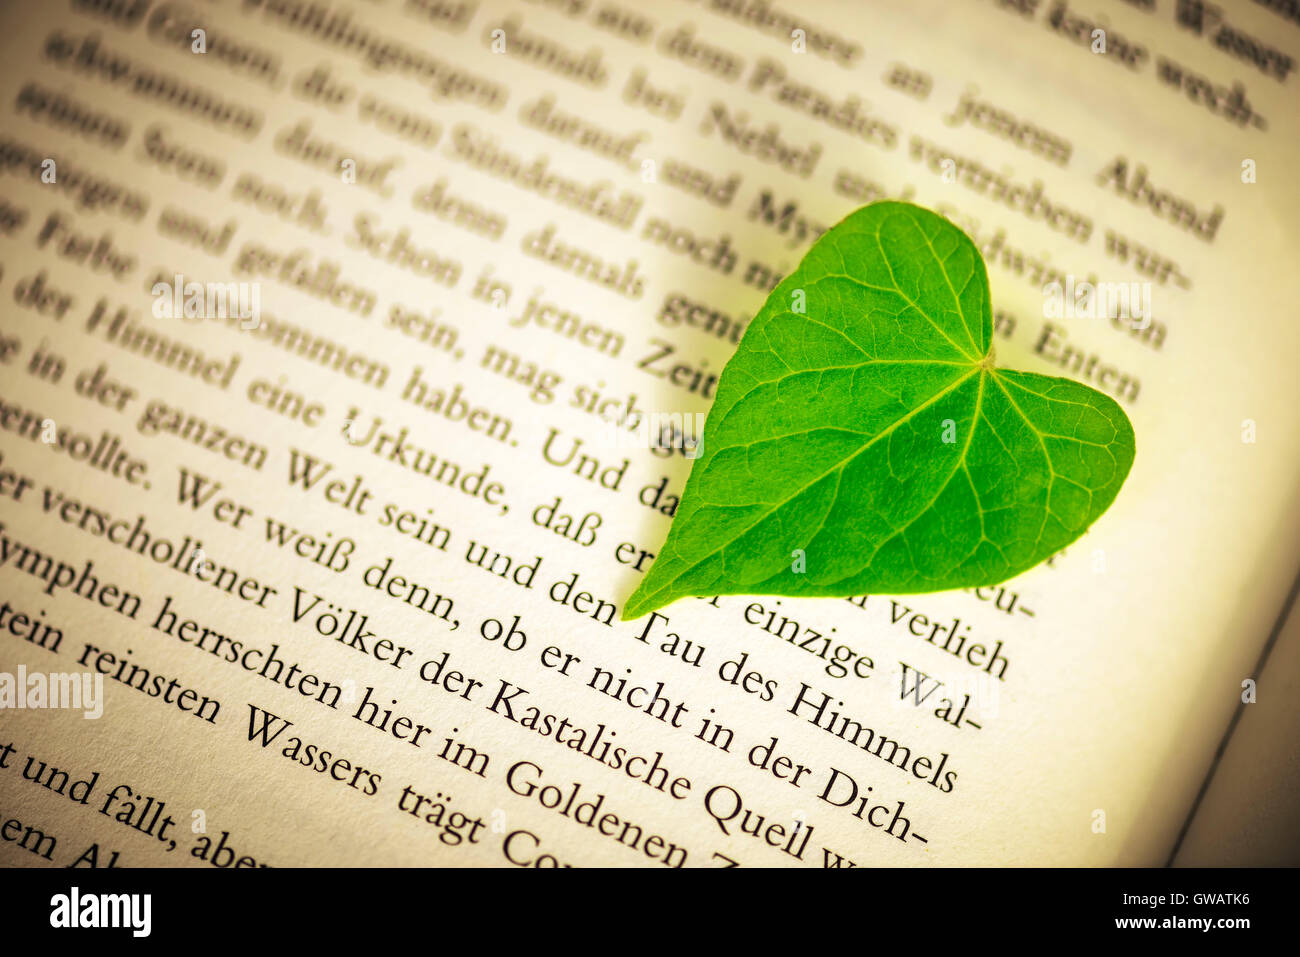 Heart-shaped sheet on a book page, Herzfoermiges Blatt auf einer Buchseite Stock Photo